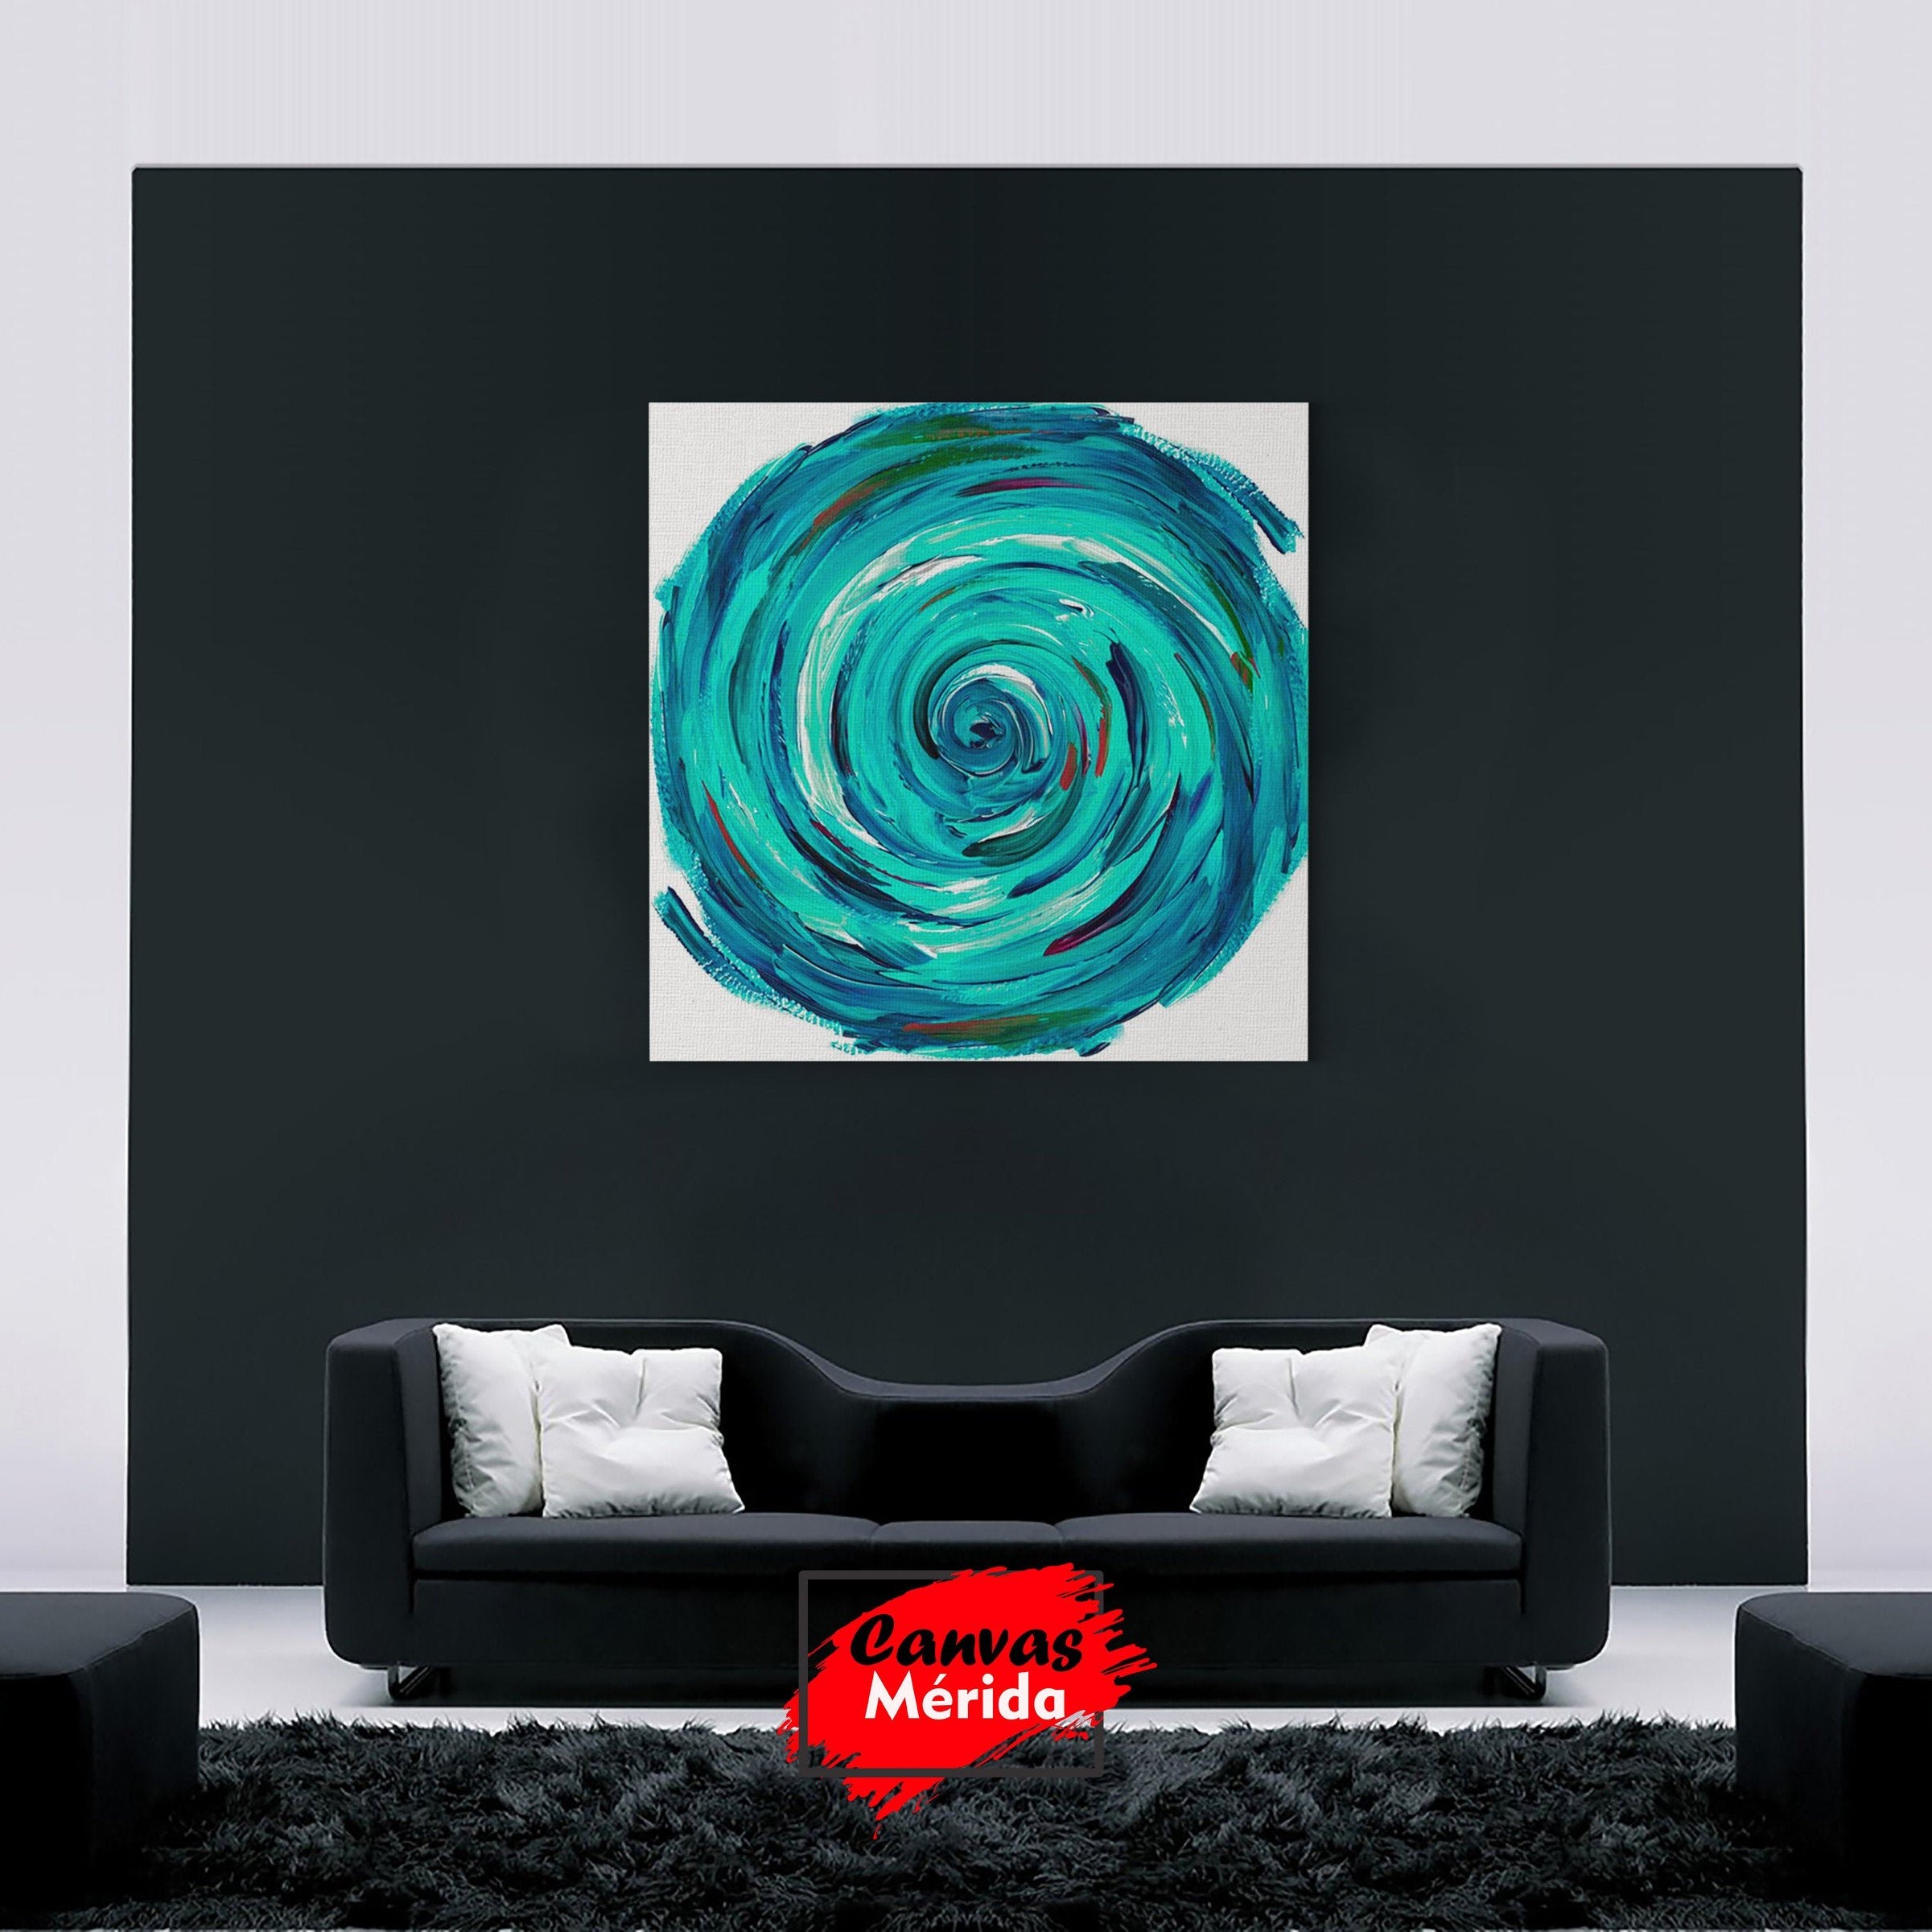 Pintura abstracta con textura impasto de una espiral en tonos azules y verdes que simboliza calma y movimiento